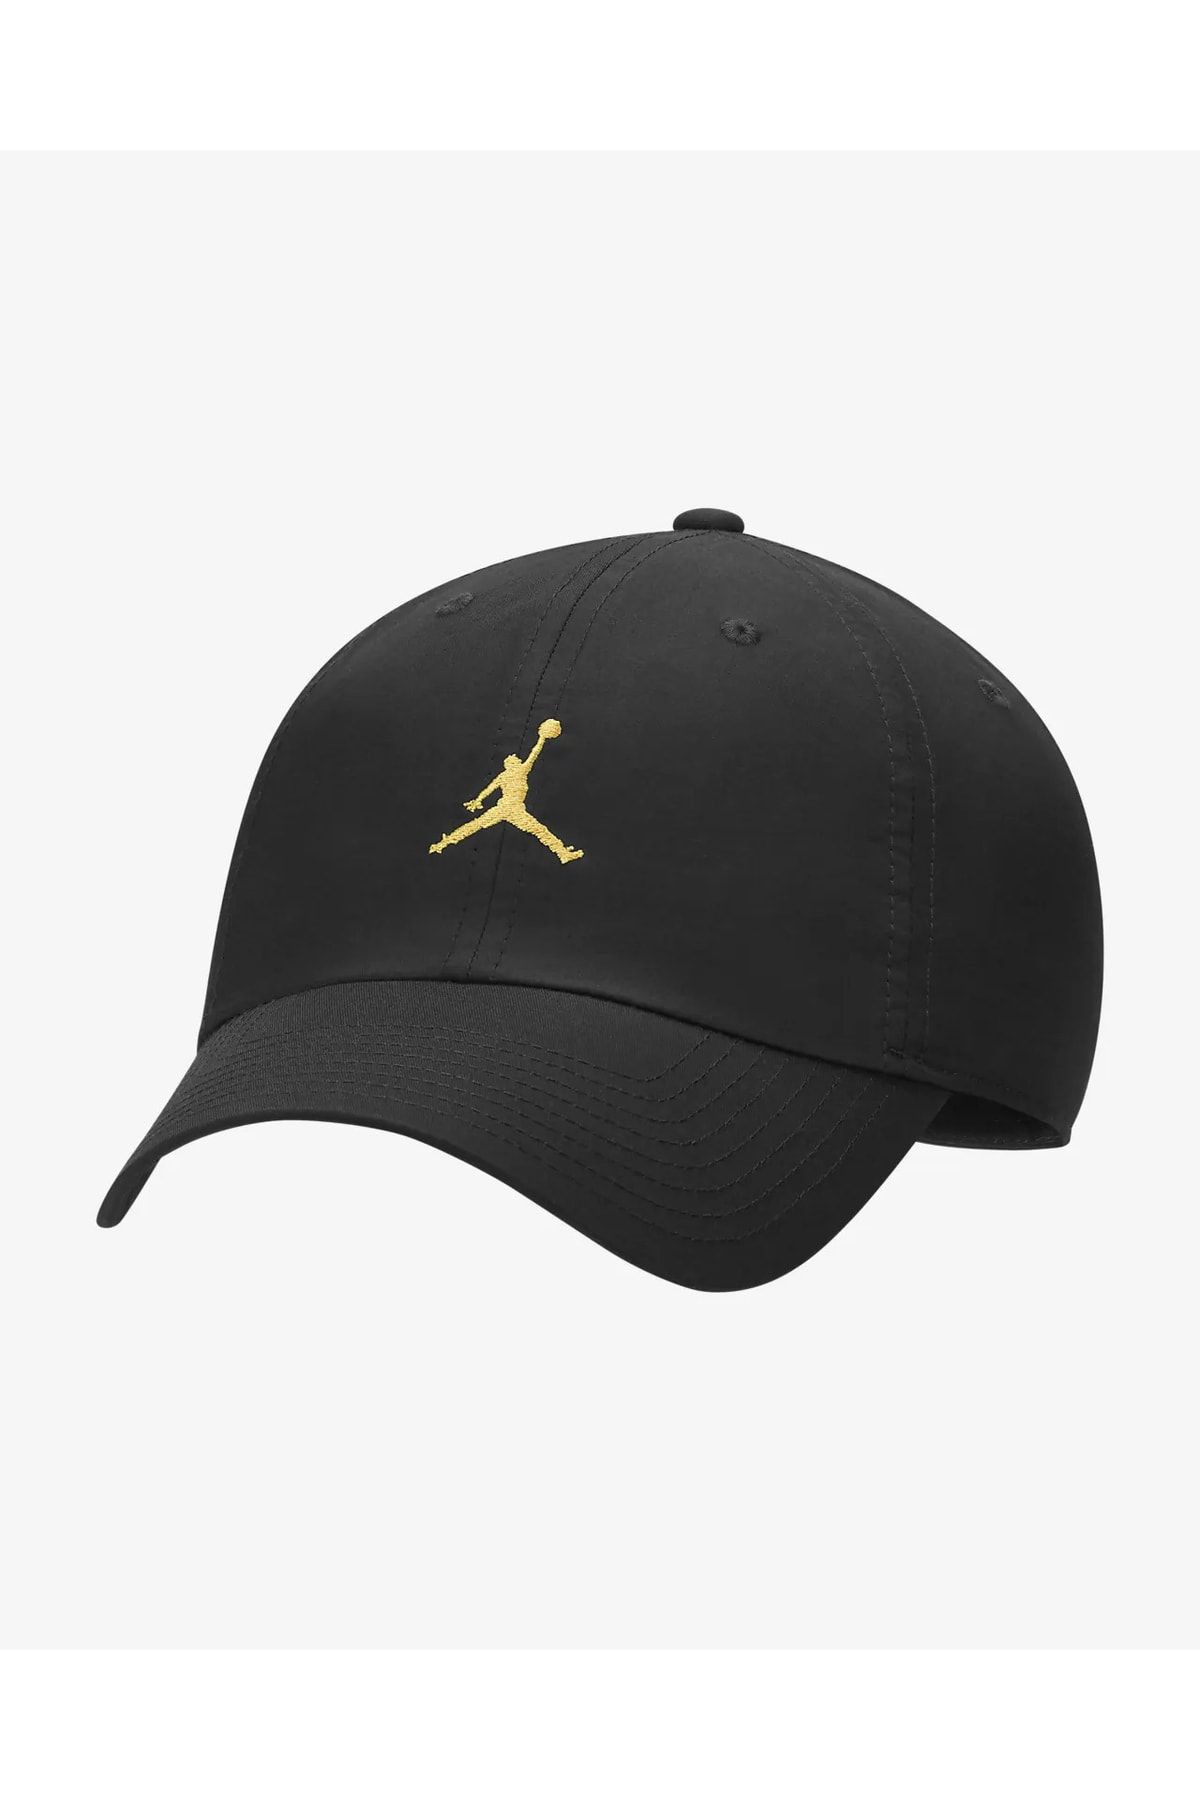 Nike Jordan H86 Jm Nba Erkek Siyah Basketbol Şapka Dc3673-012